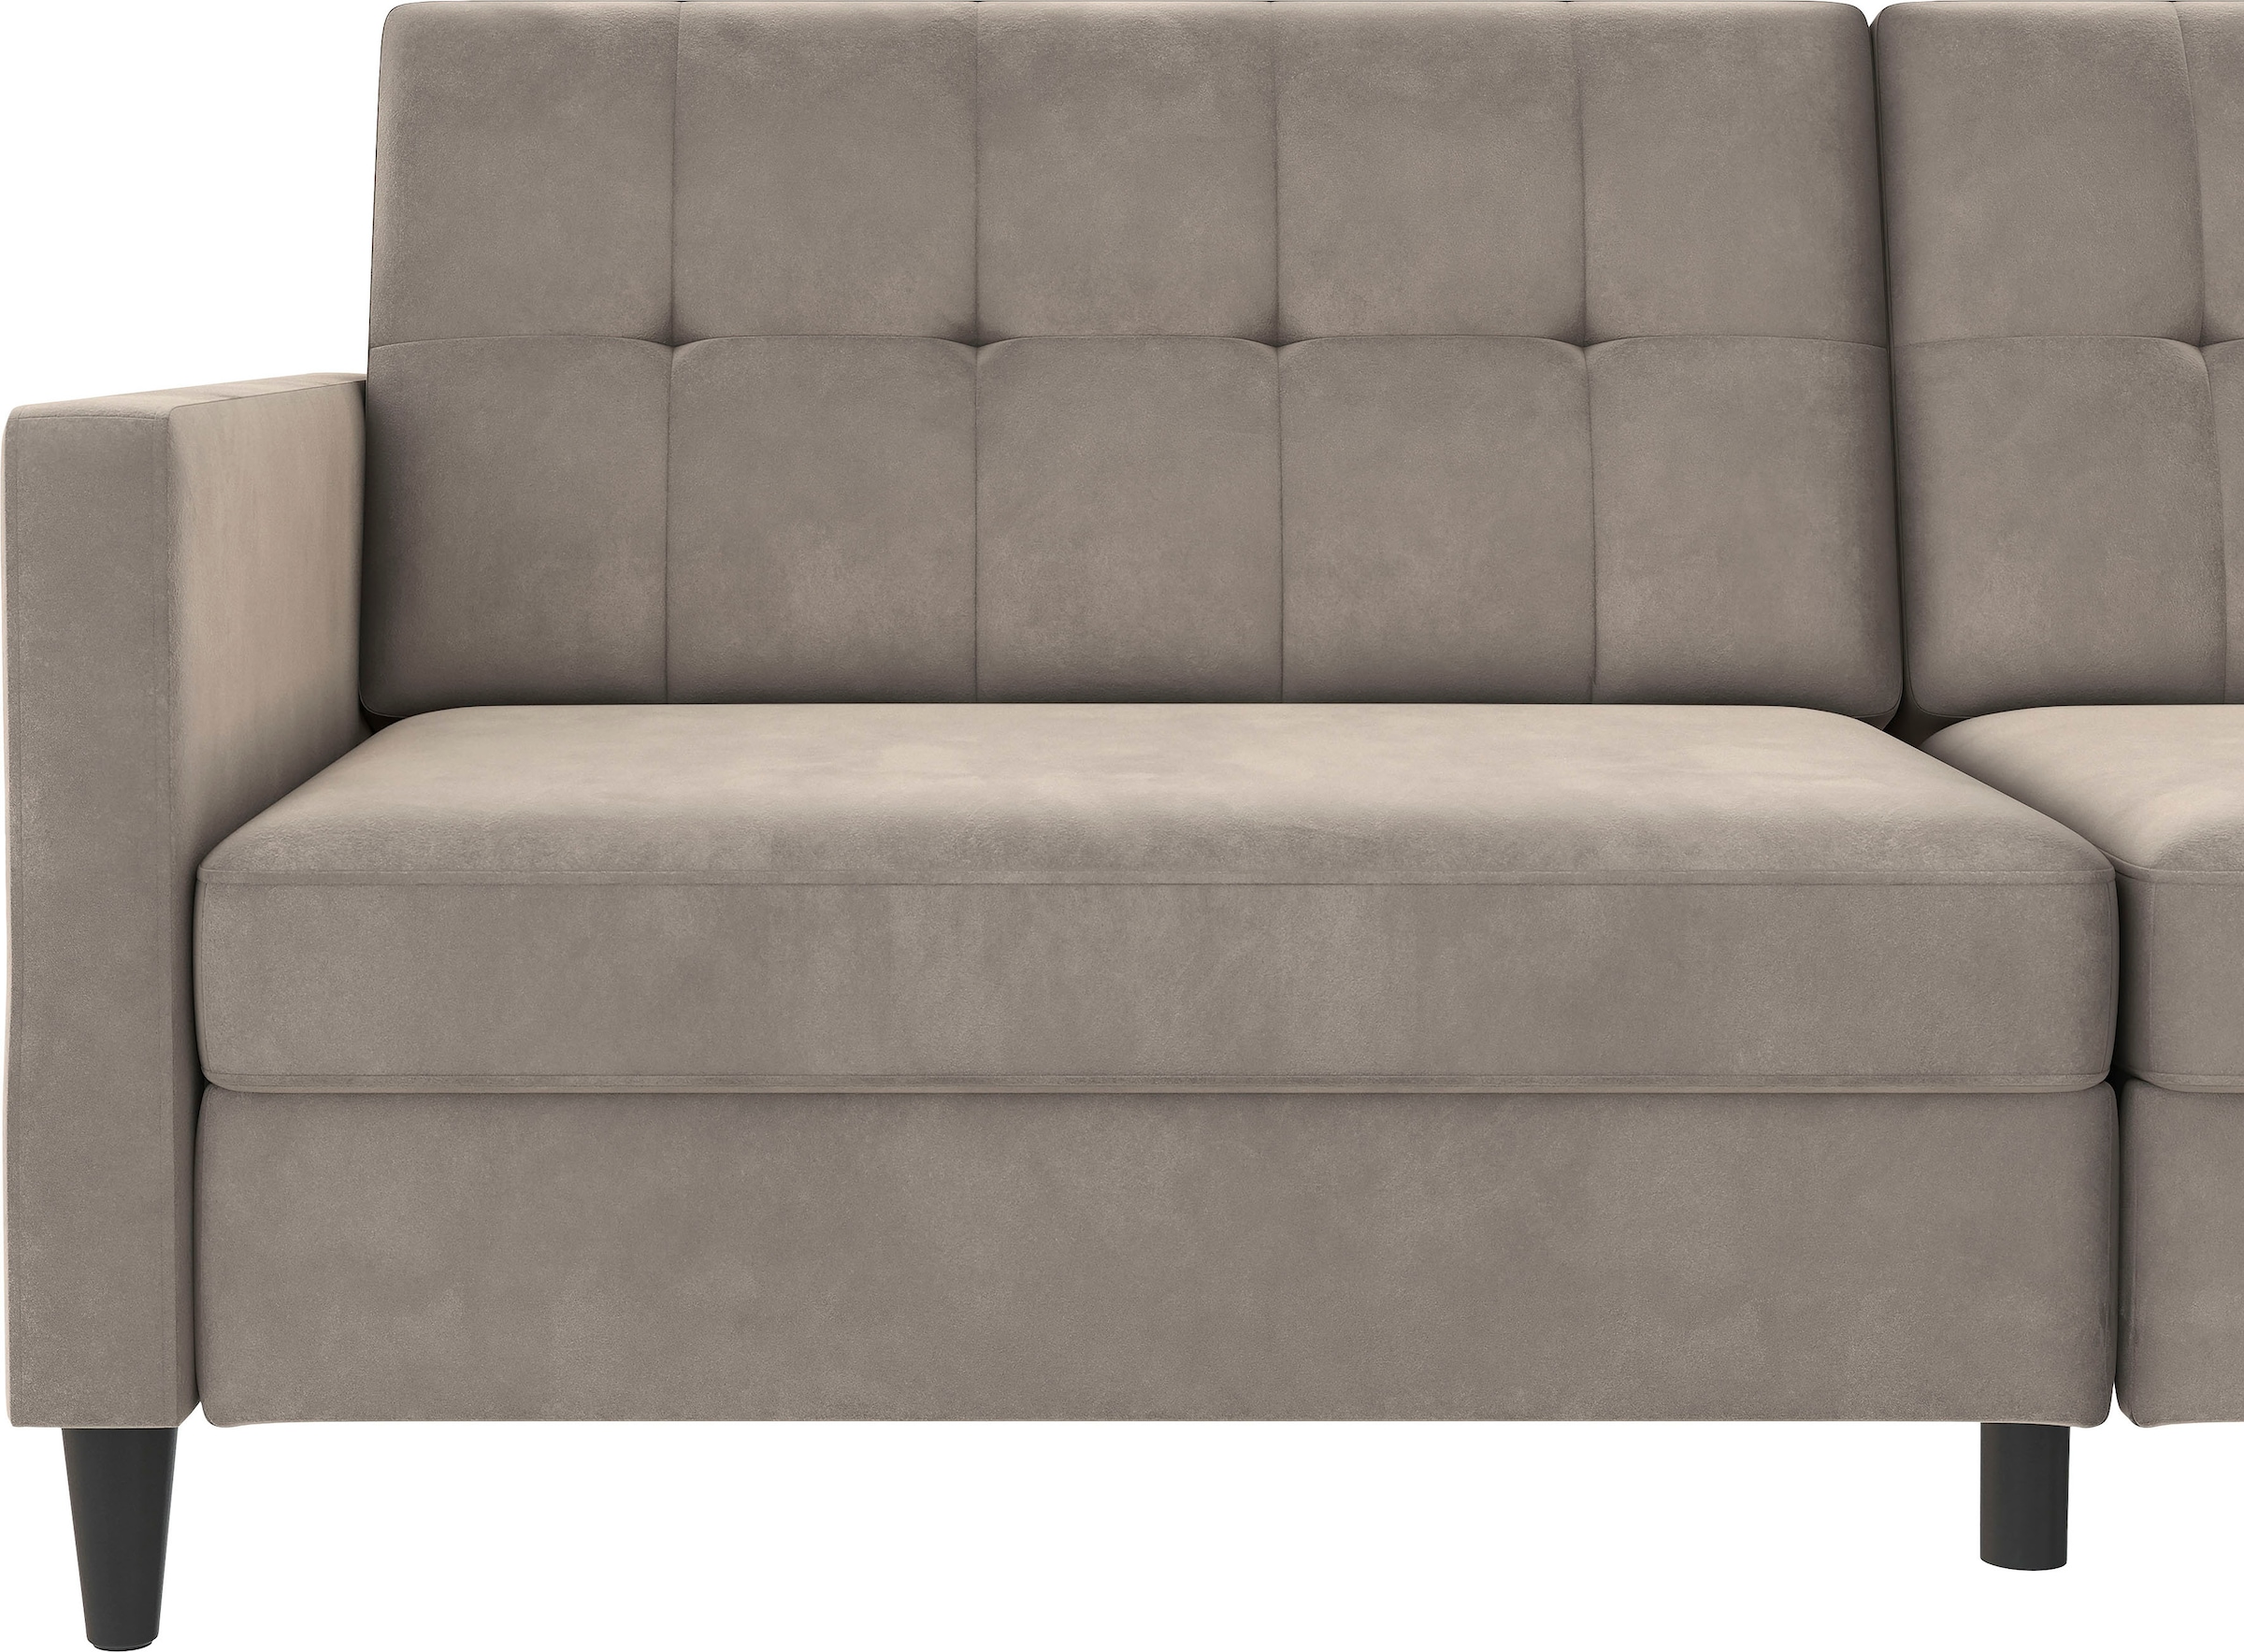 Dorel Home 3-Sitzer »Hartford II«, Bettfunktion, Rückenlehne 2-teilig, 3-fach verstellbar, Sitzhöhe 43 cm